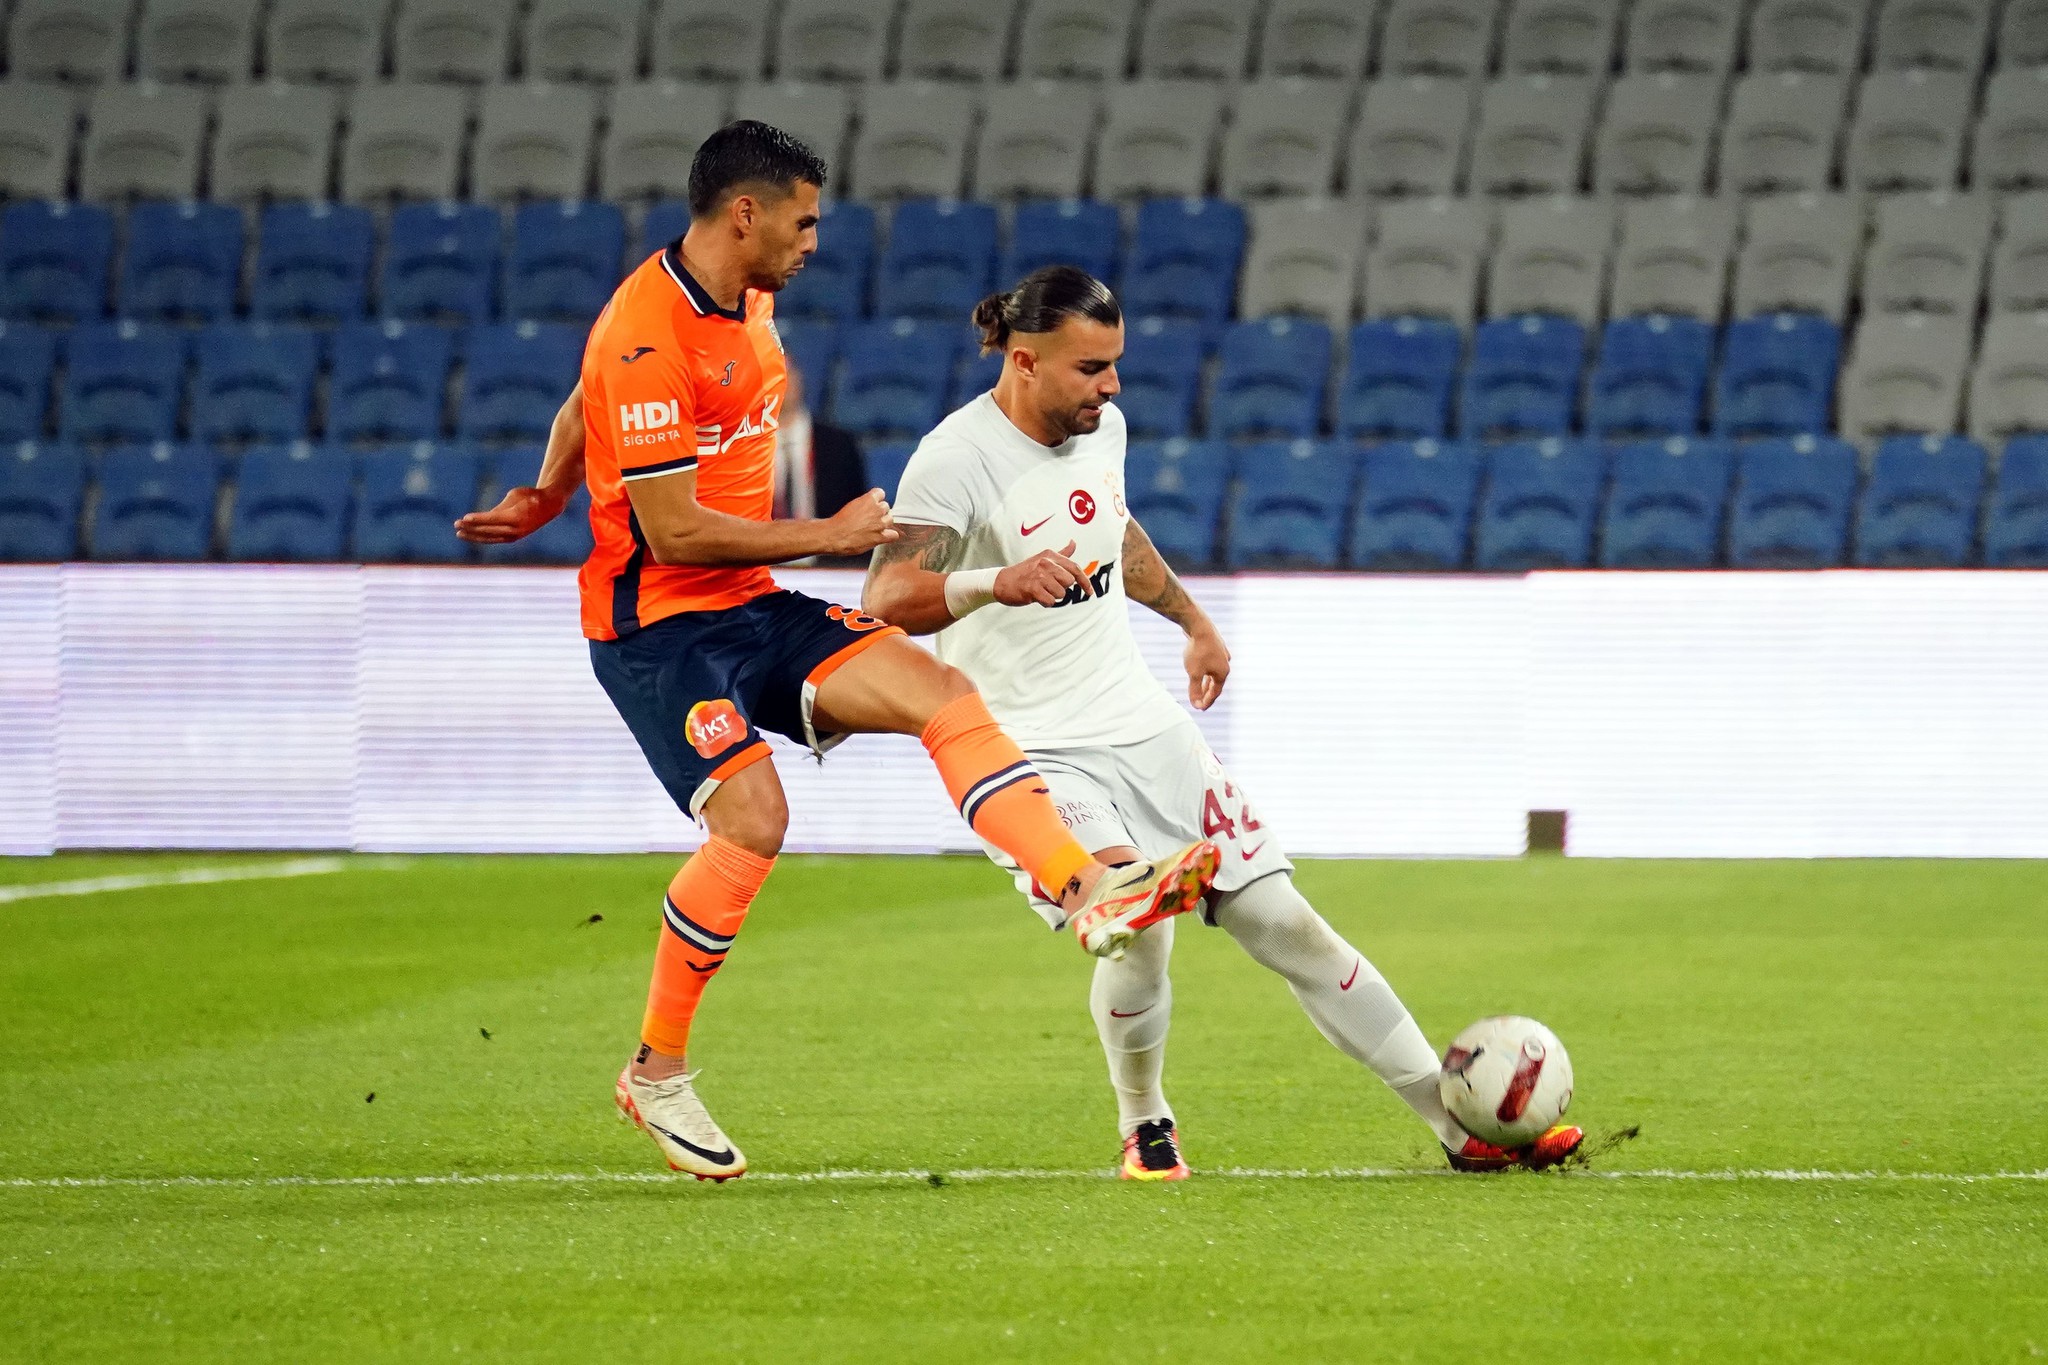 Başakşehir - Galatasaray maçını spor yazarları değerlendirdi